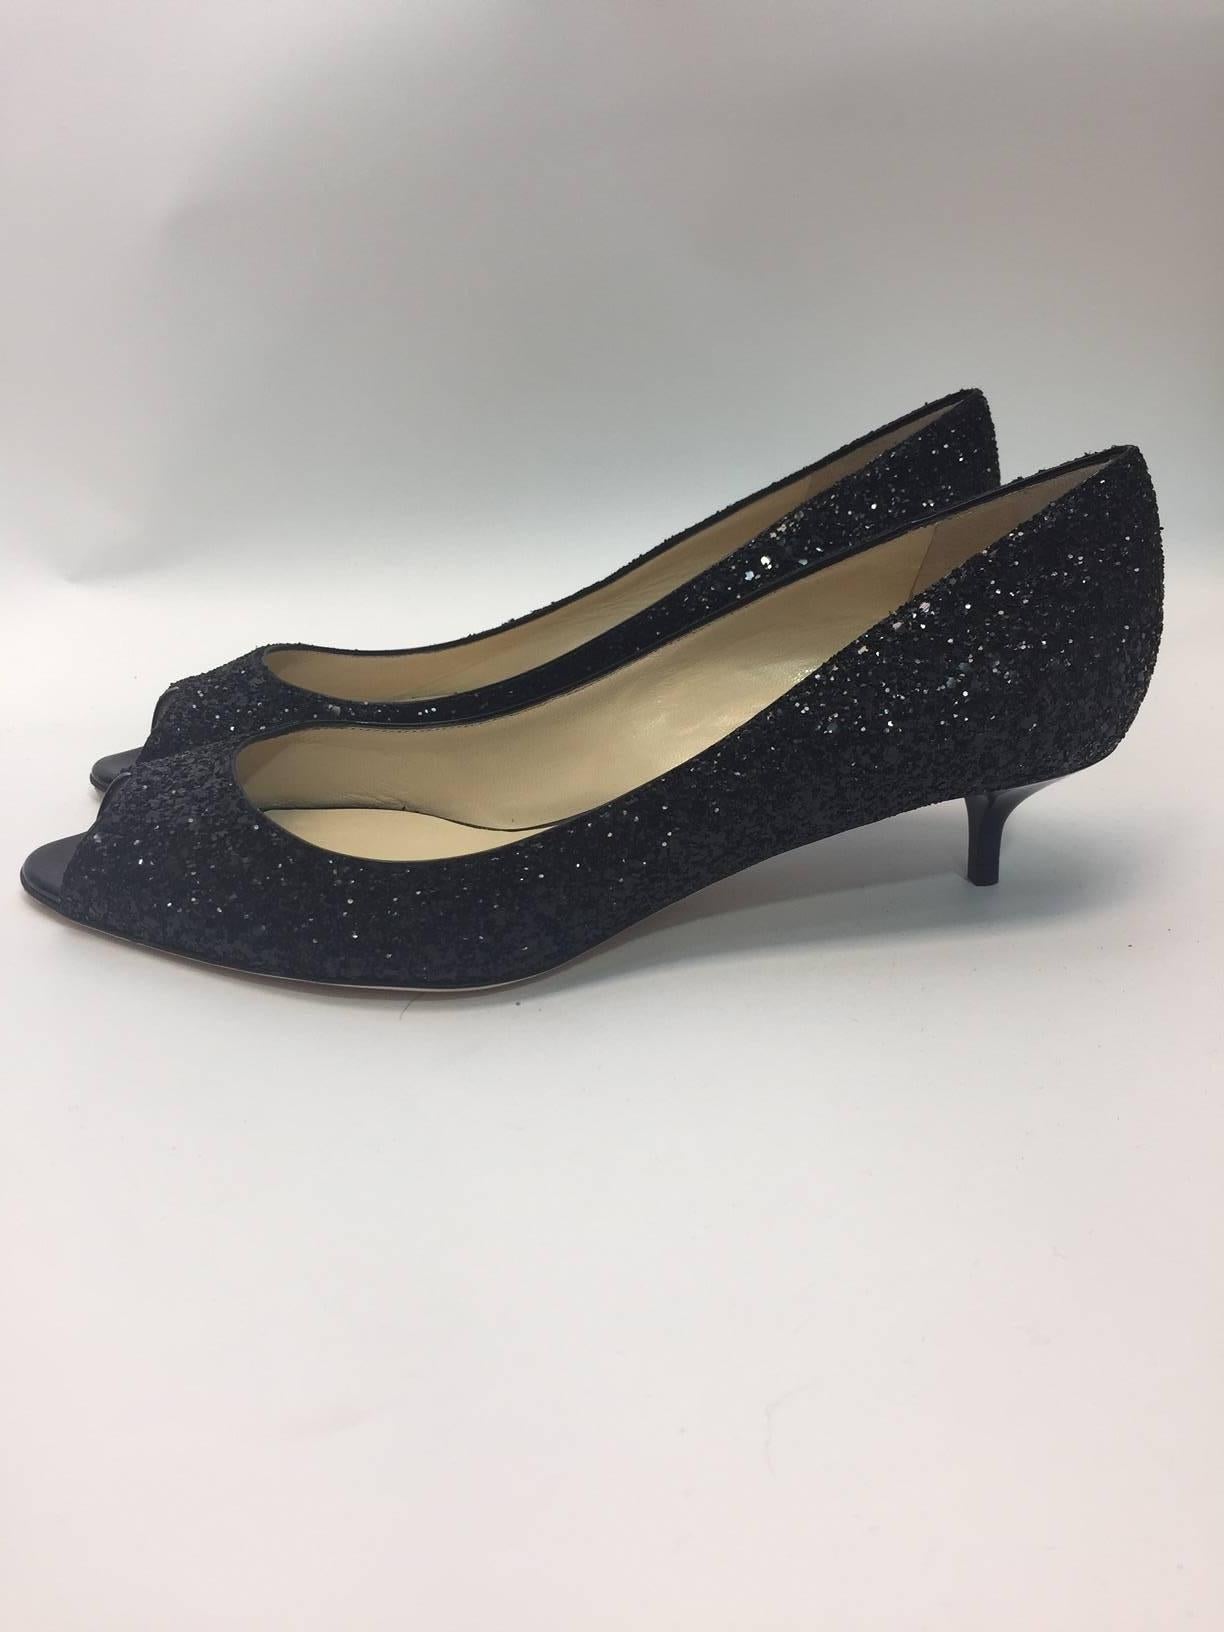 Jimmy Choo New Black Glitter Kitten Heels
Peep toe style
Made in Italy
Size 40.5
$499

